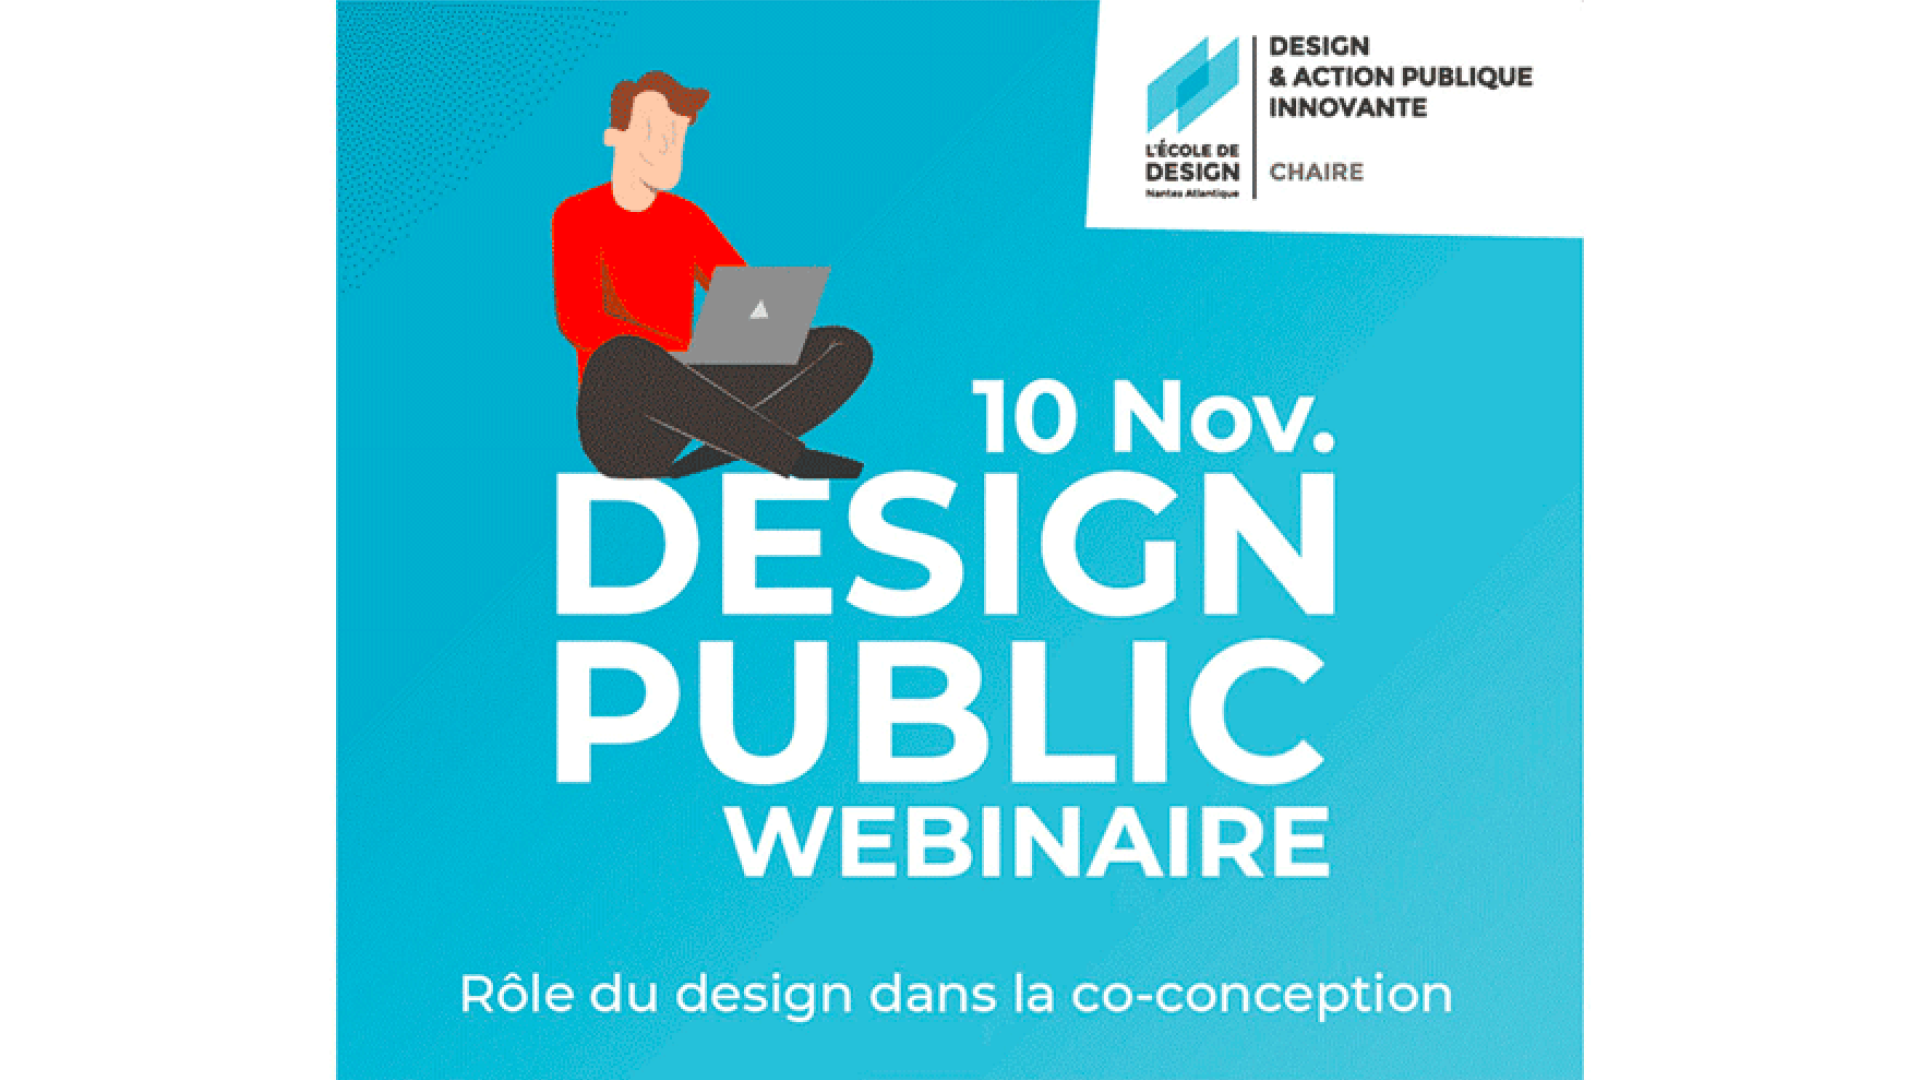 Webinaire 10 novembre Chaire Design & Action publique innovante